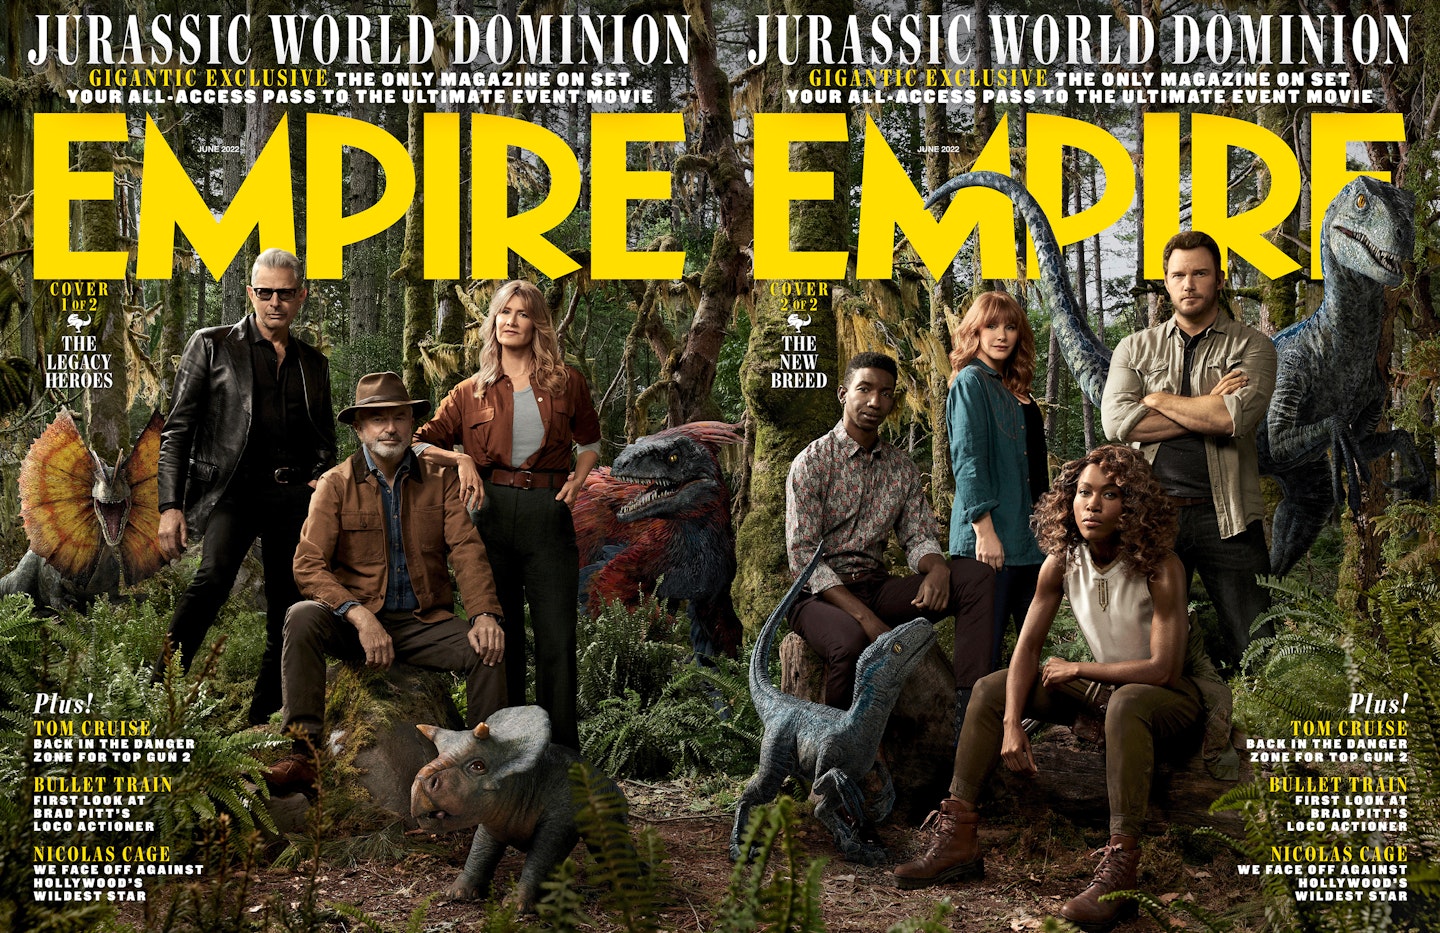 Jurassic World Dominion Empire covers